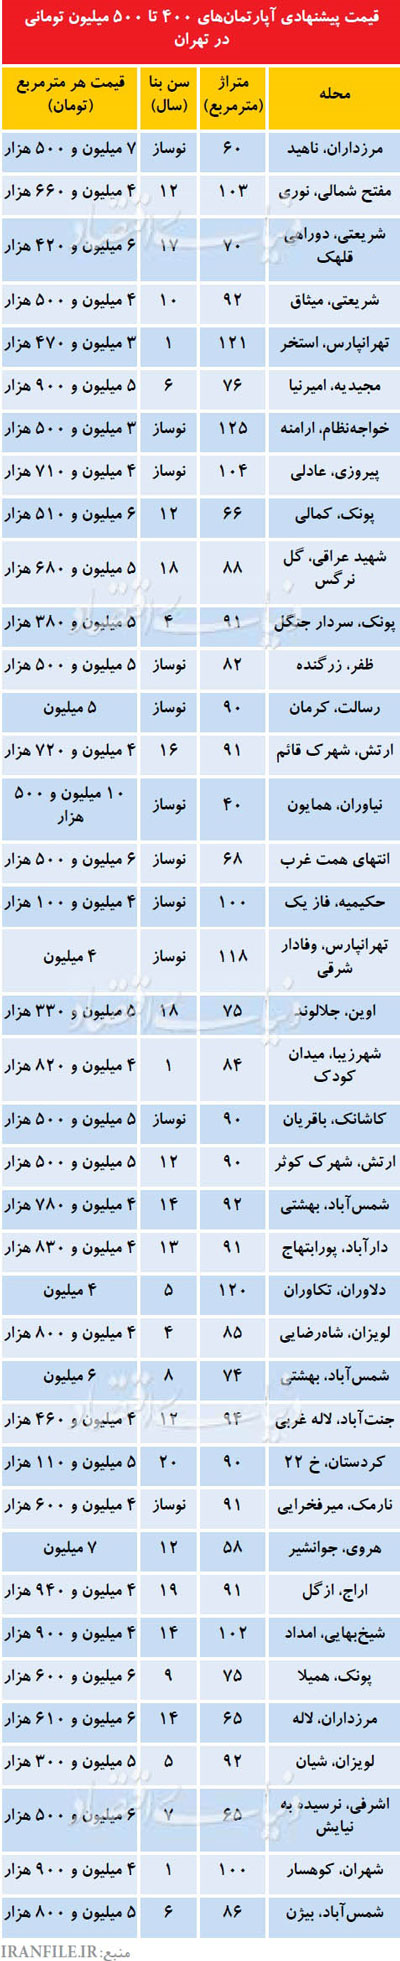 آپارتمانهای 400تا 500میلیون تومانی در تهران!